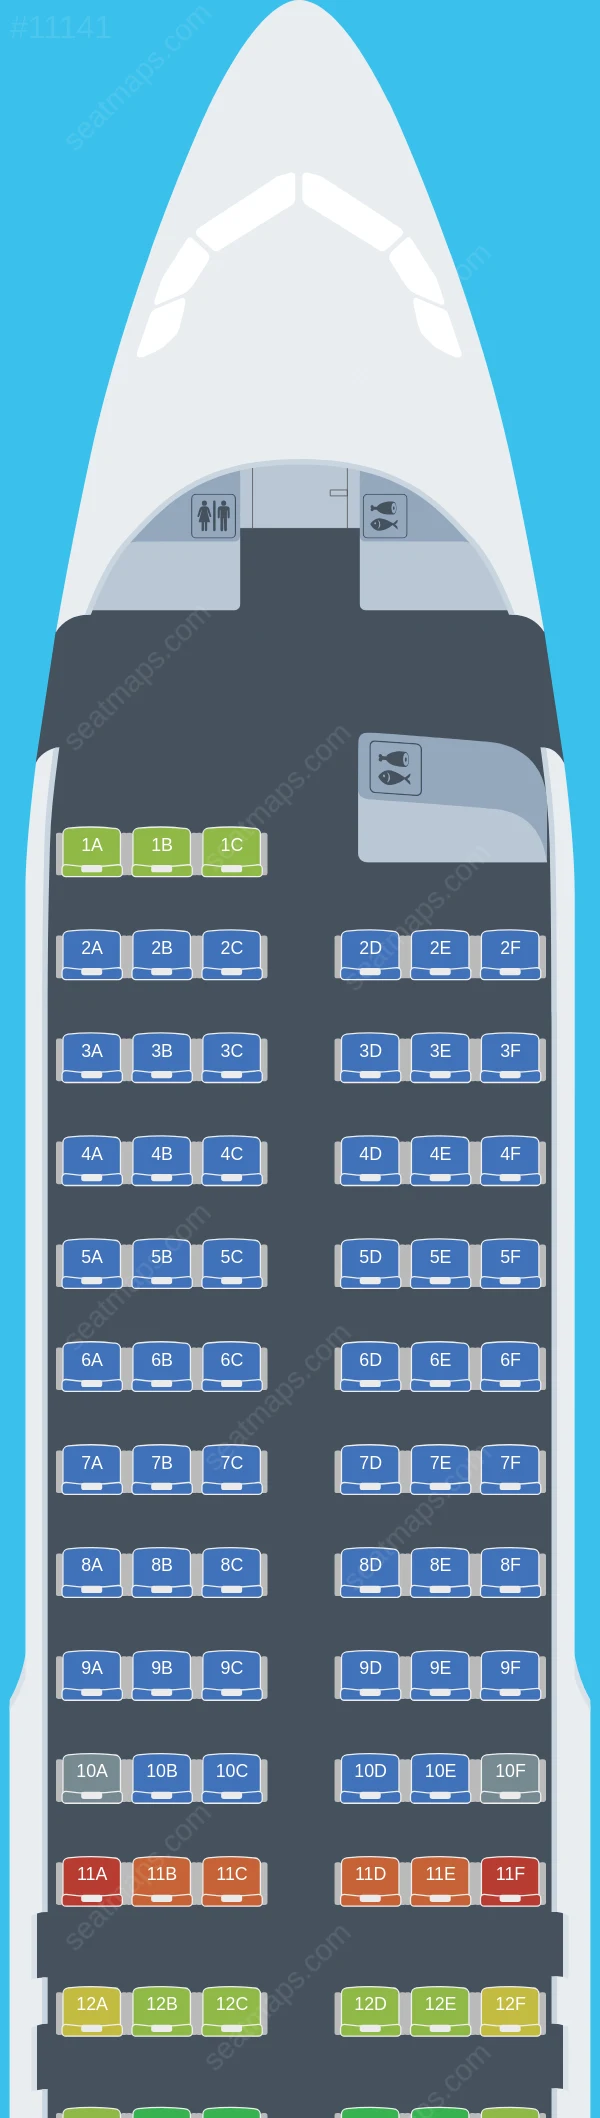 BA Euroflyer Airbus A320-200 seatmap preview